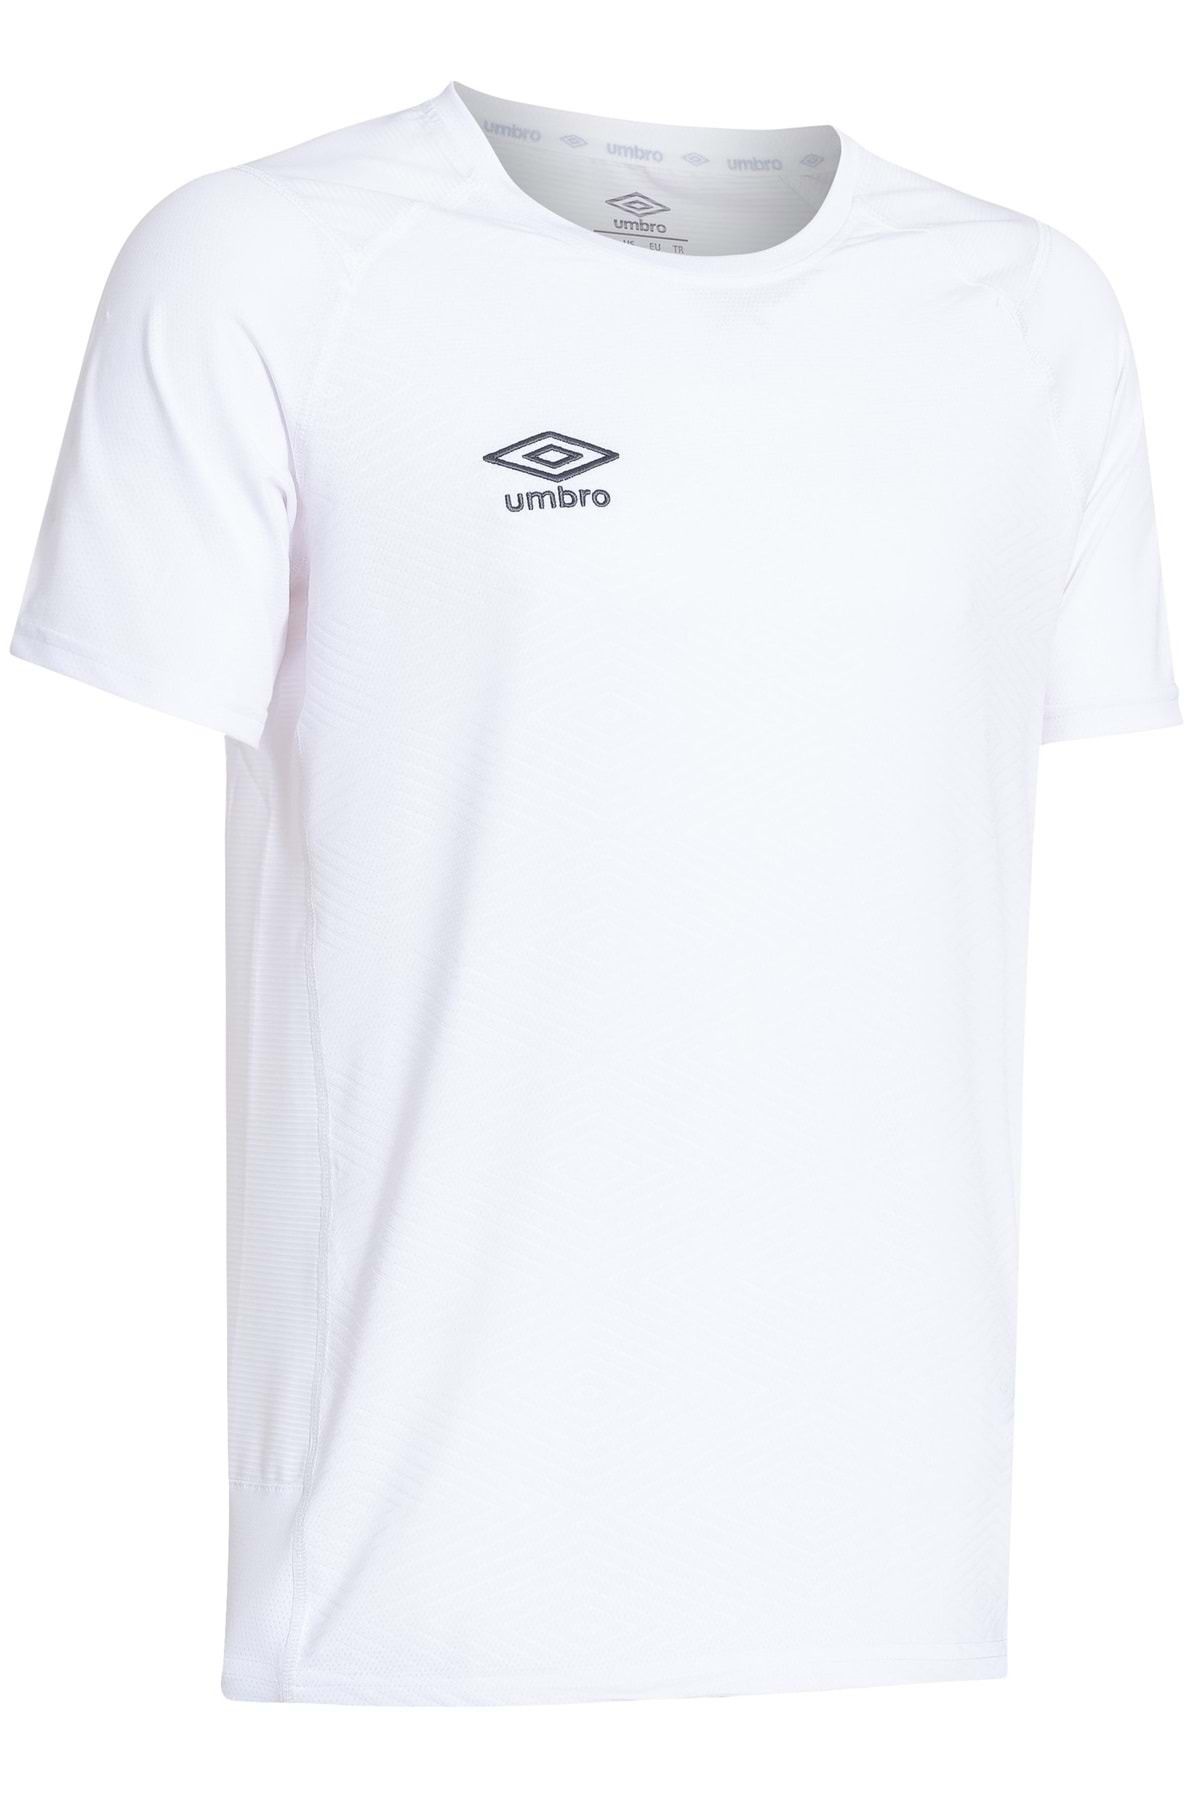 Umbro Tf-0167 Kısa Kol T-shirt Erkek Tişört Beyaz